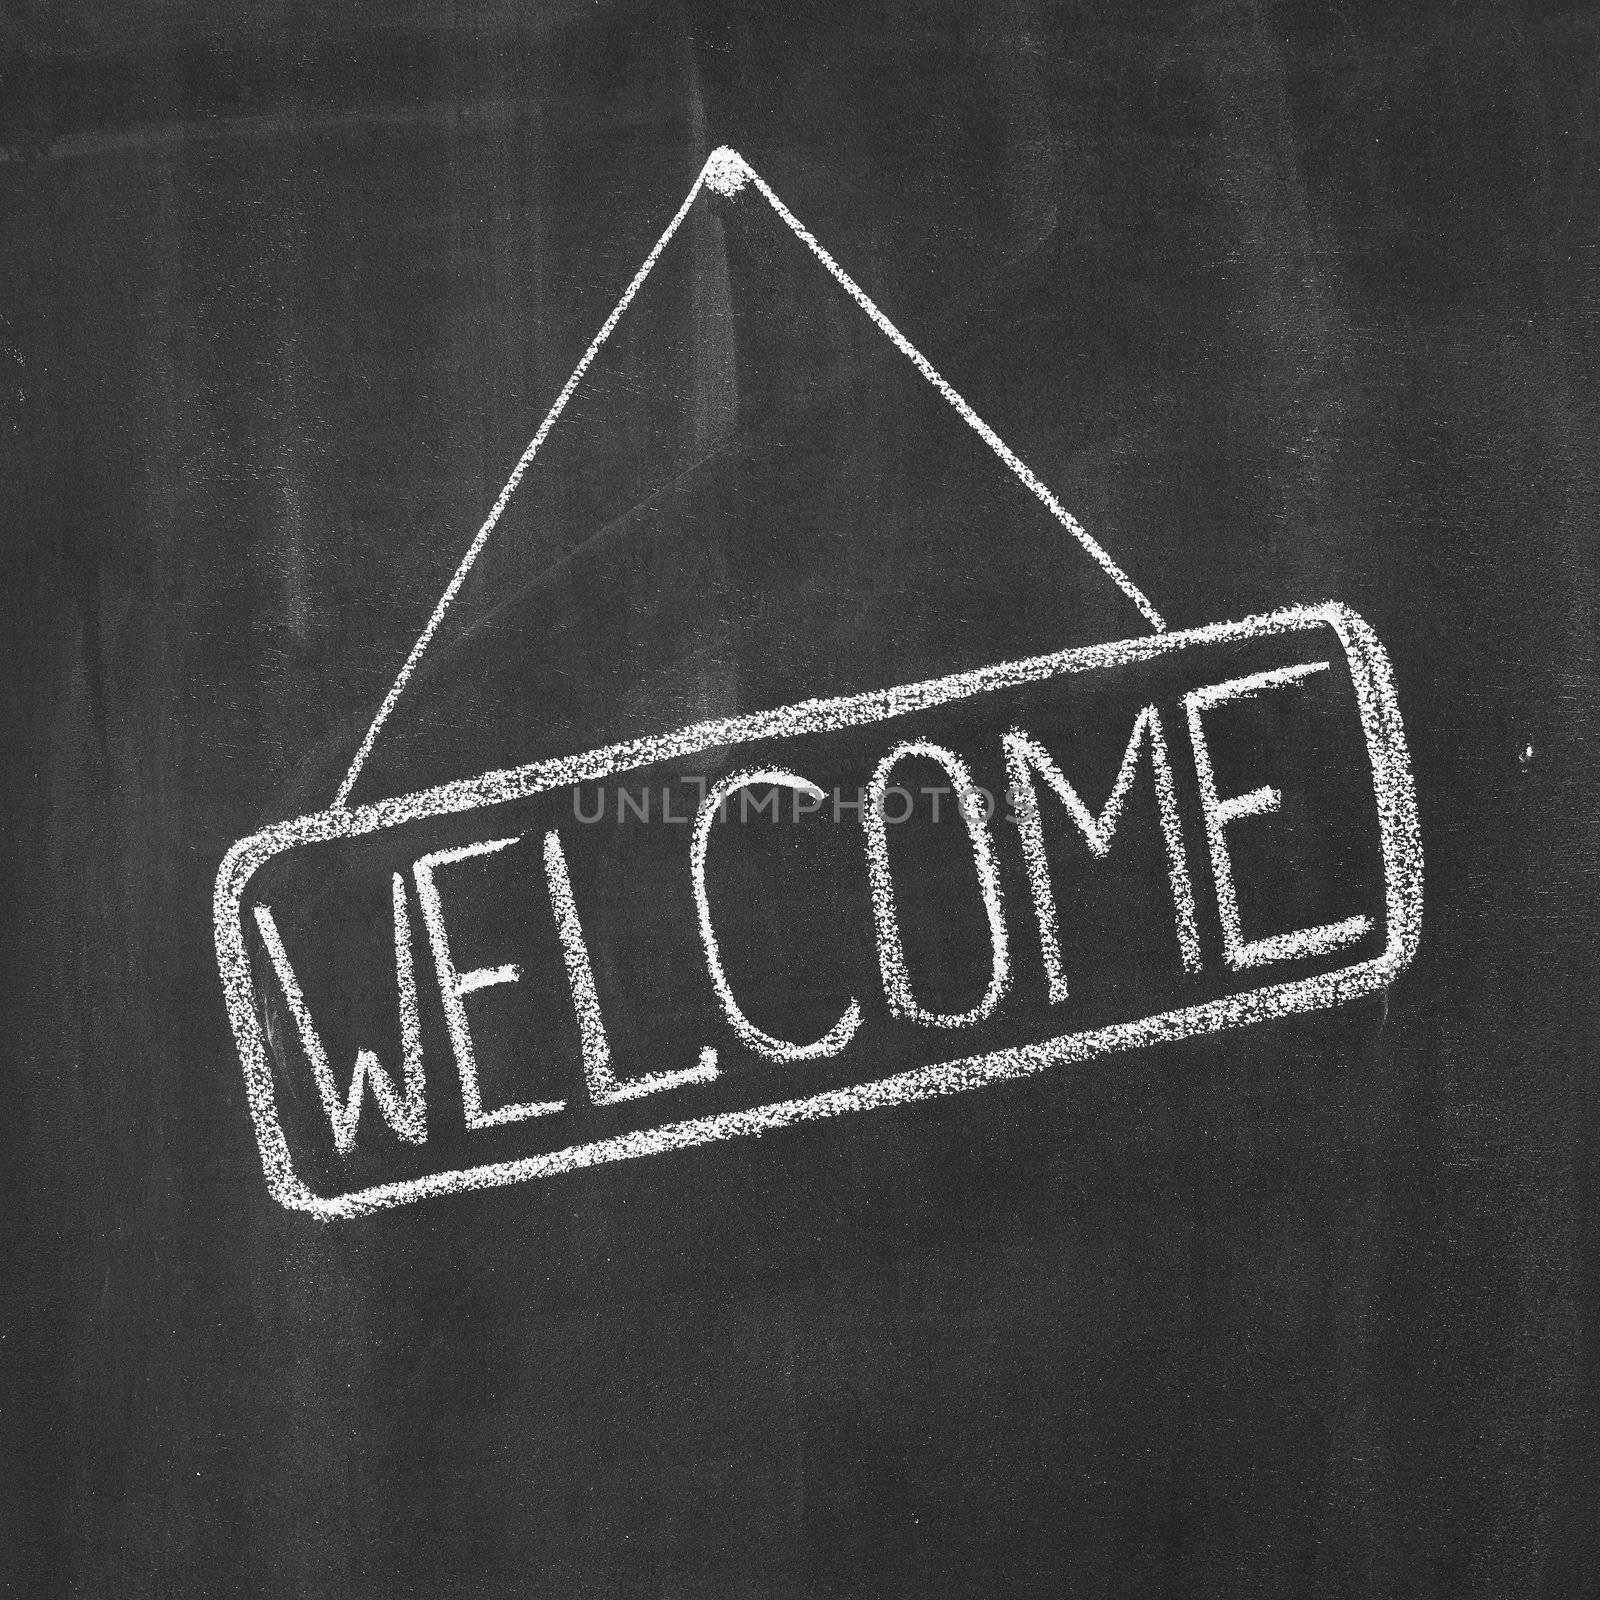 Word "Welcome" written by a chalk on a blackboard